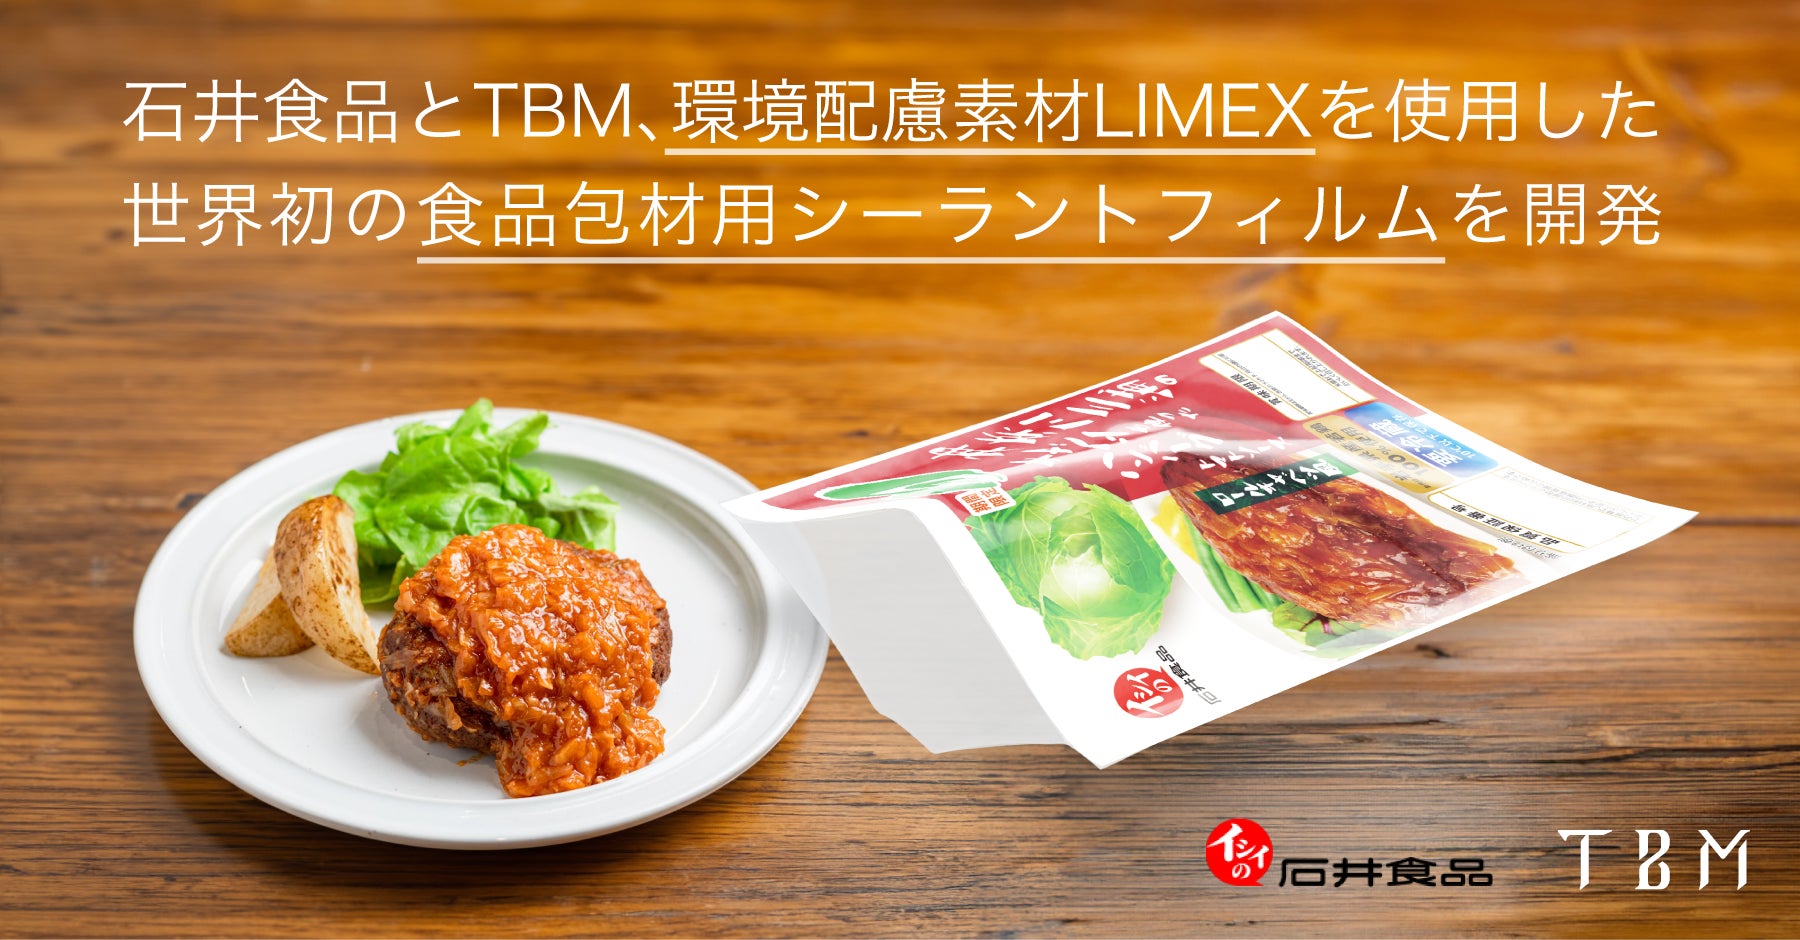 石井食品とTBM、環境配慮素材LIMEXを使用した世界初の食品包材用シーラントフィルムを開発